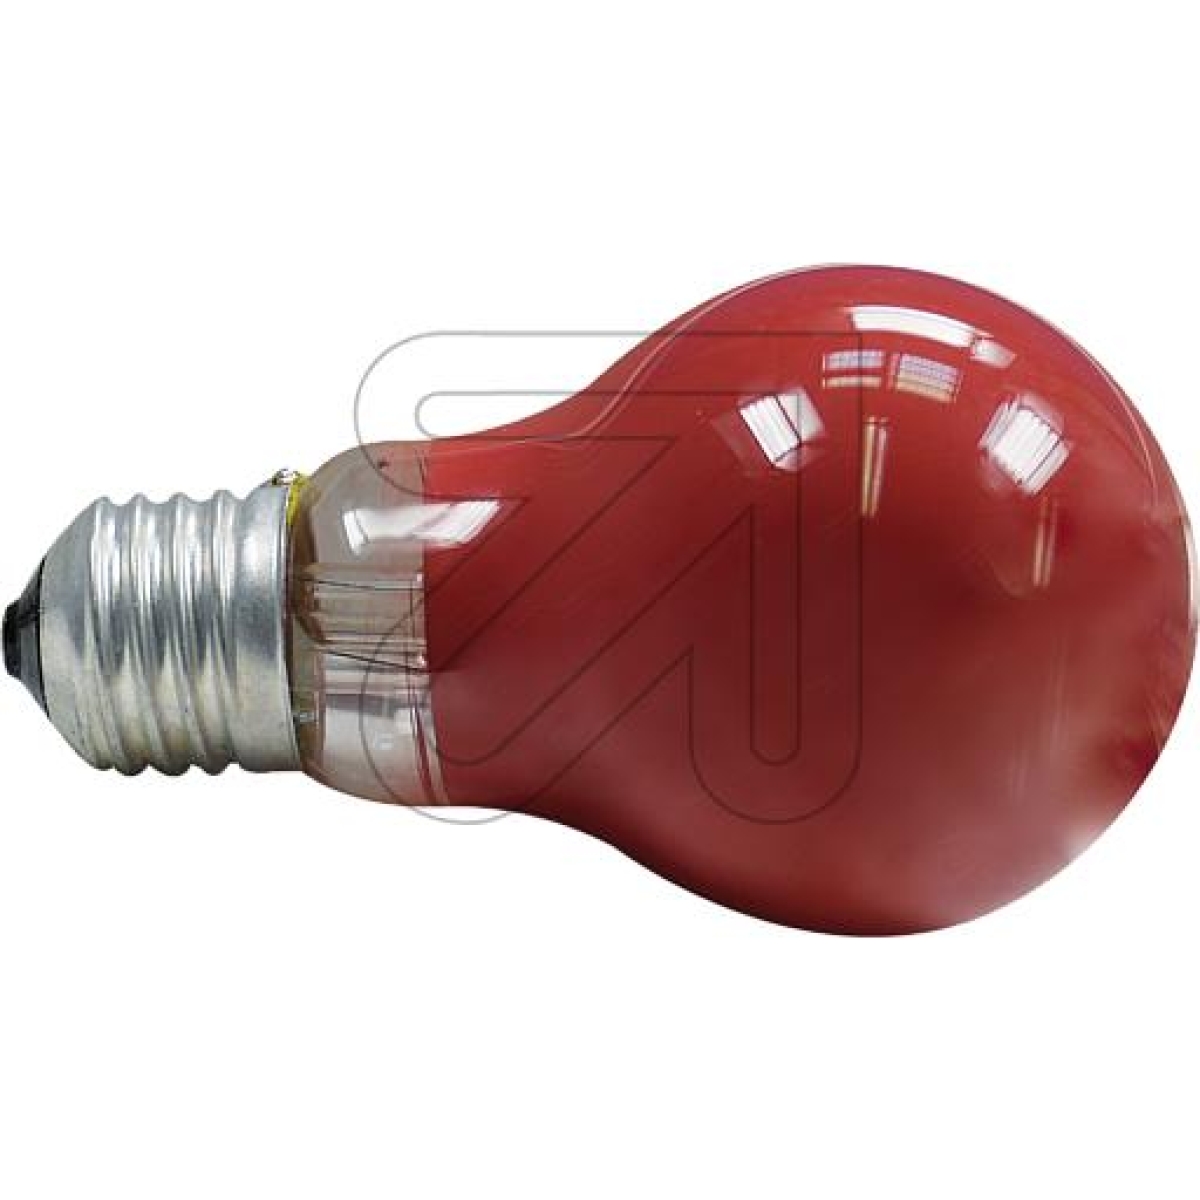 LEDmaxxAllgebrauchslampe E27 25W rot gg106650Artikel-Nr: 511800